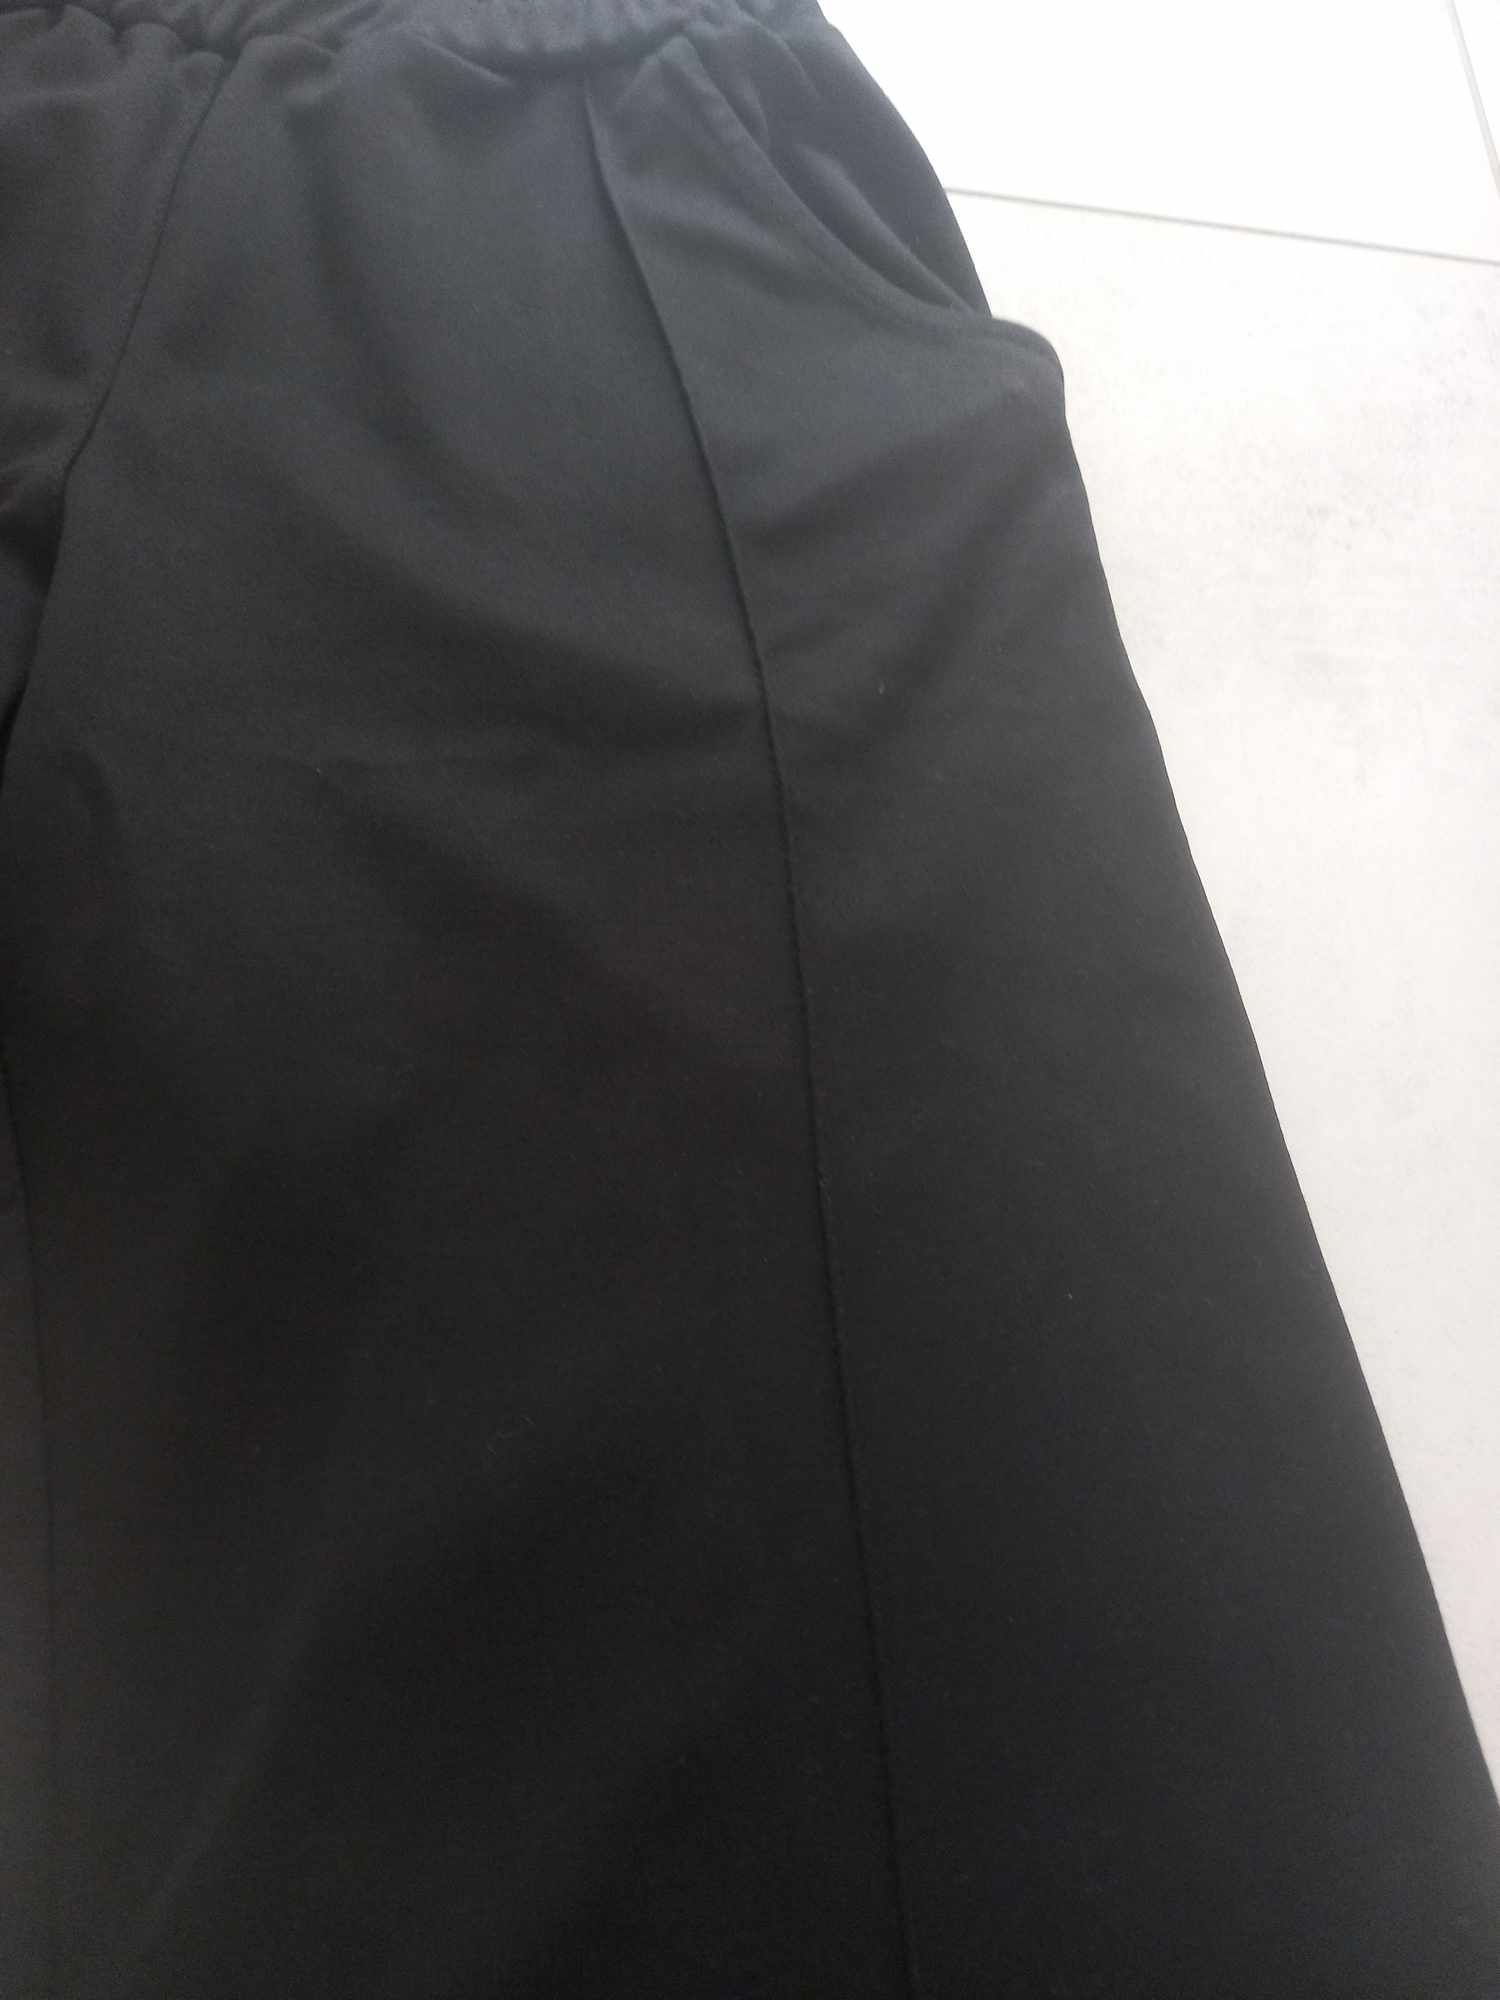 Spodnie damskie dzwony czarne rozmiar uniwersalny